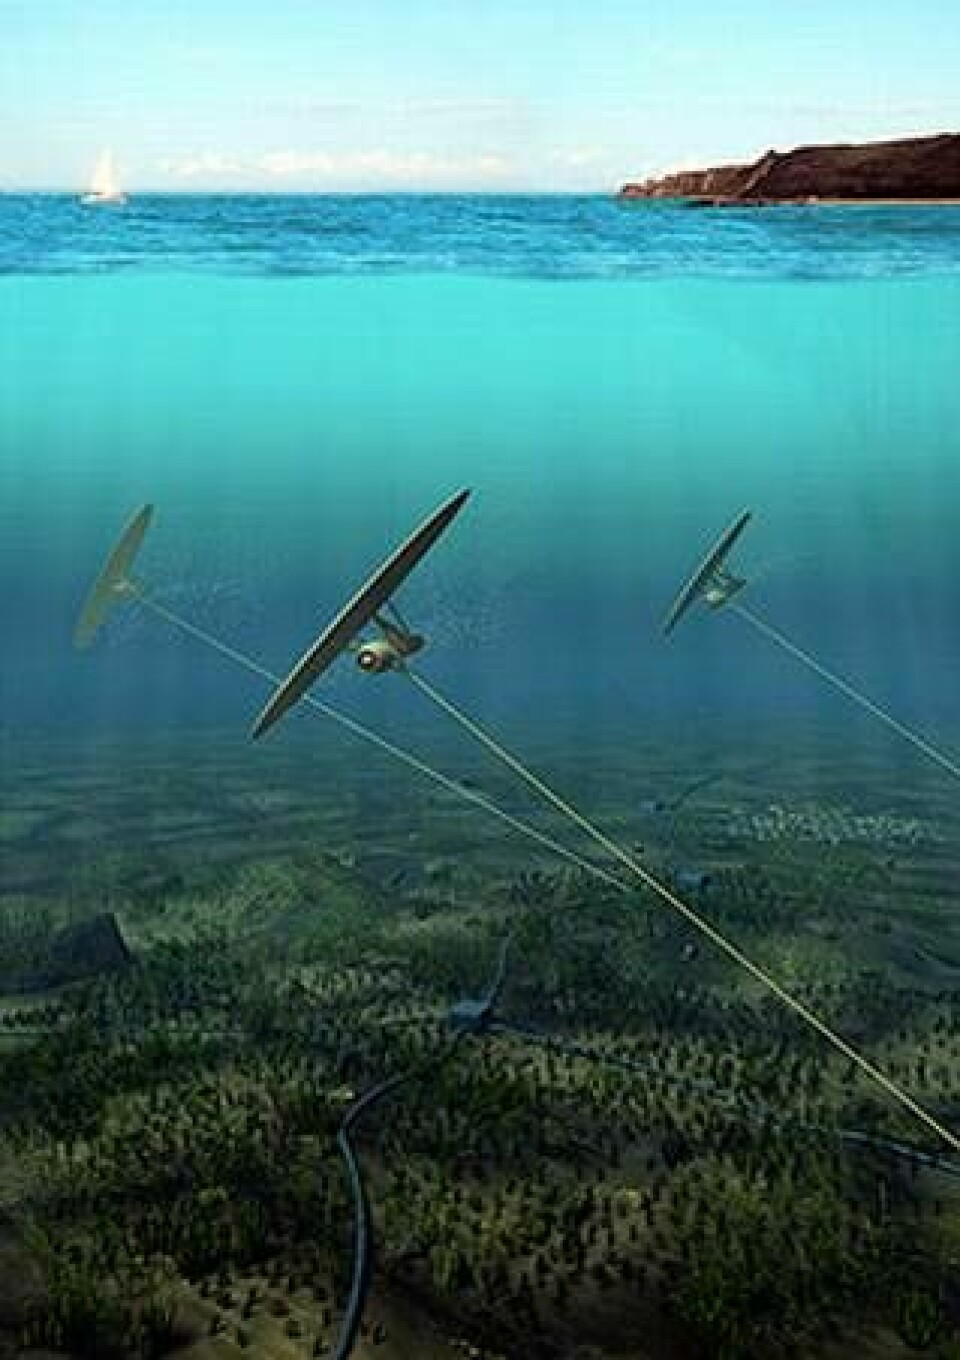 Svenska Minestos undervattensdrake siktar på att utvinna energi ur långsamma undervattensströmmar. Test pågår utanför Wales kust. Foto: Minesto